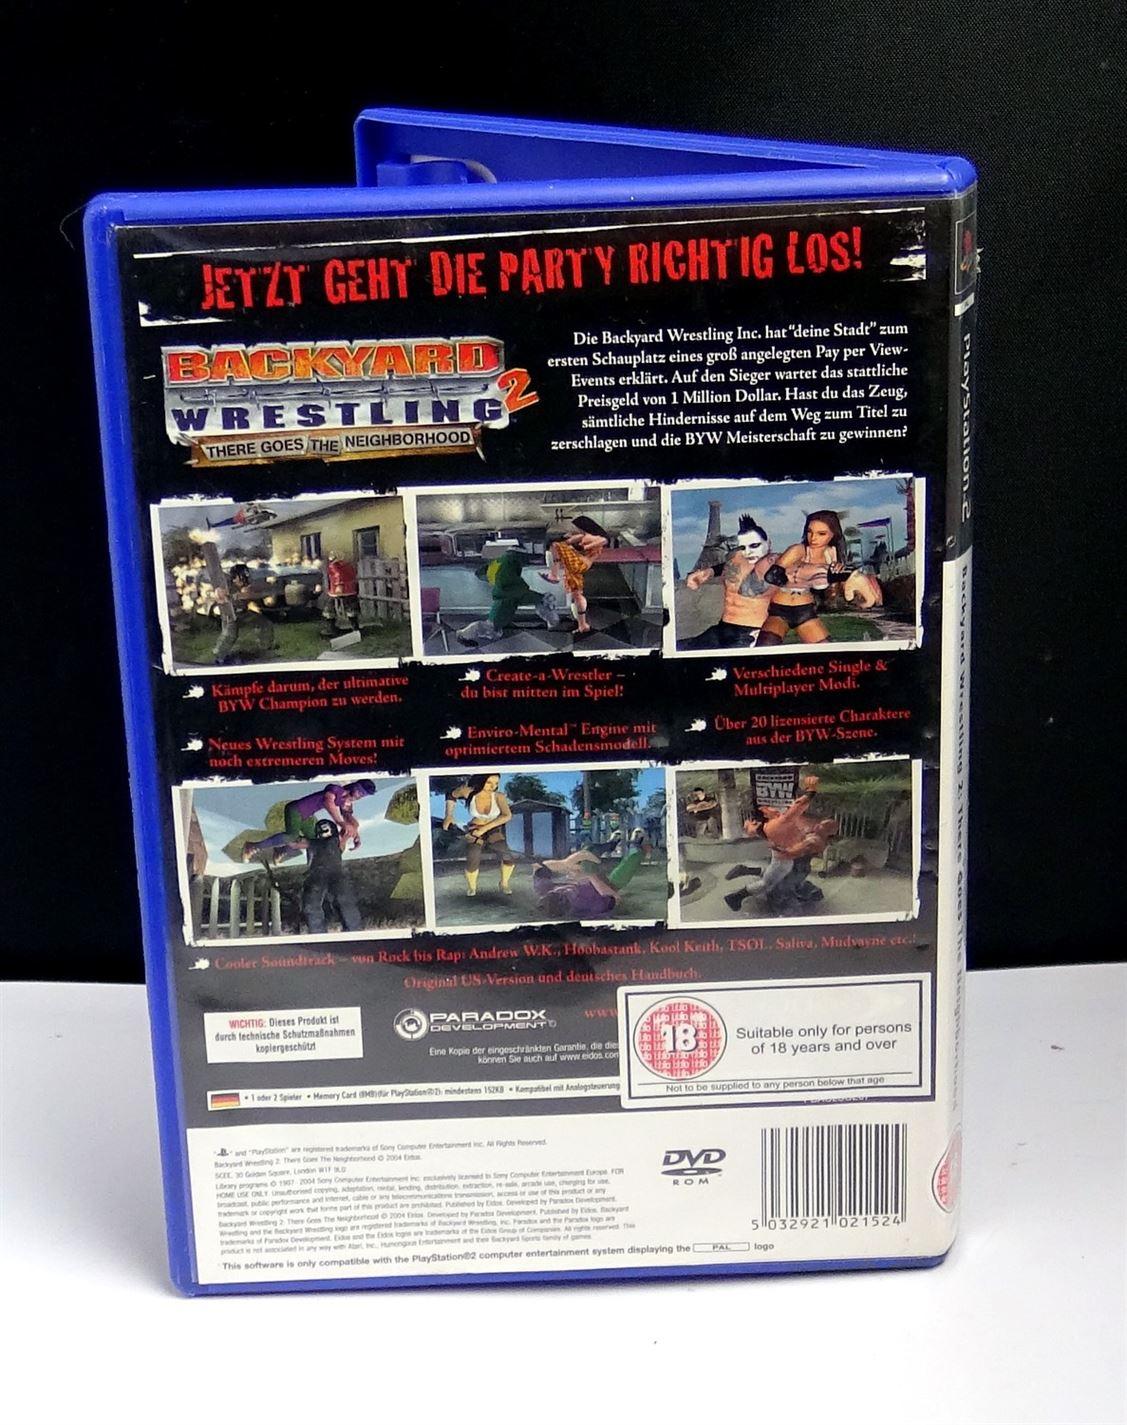 Backyard Wrestling 2: There Goes The Neighborhood (PS2) - UK Seller